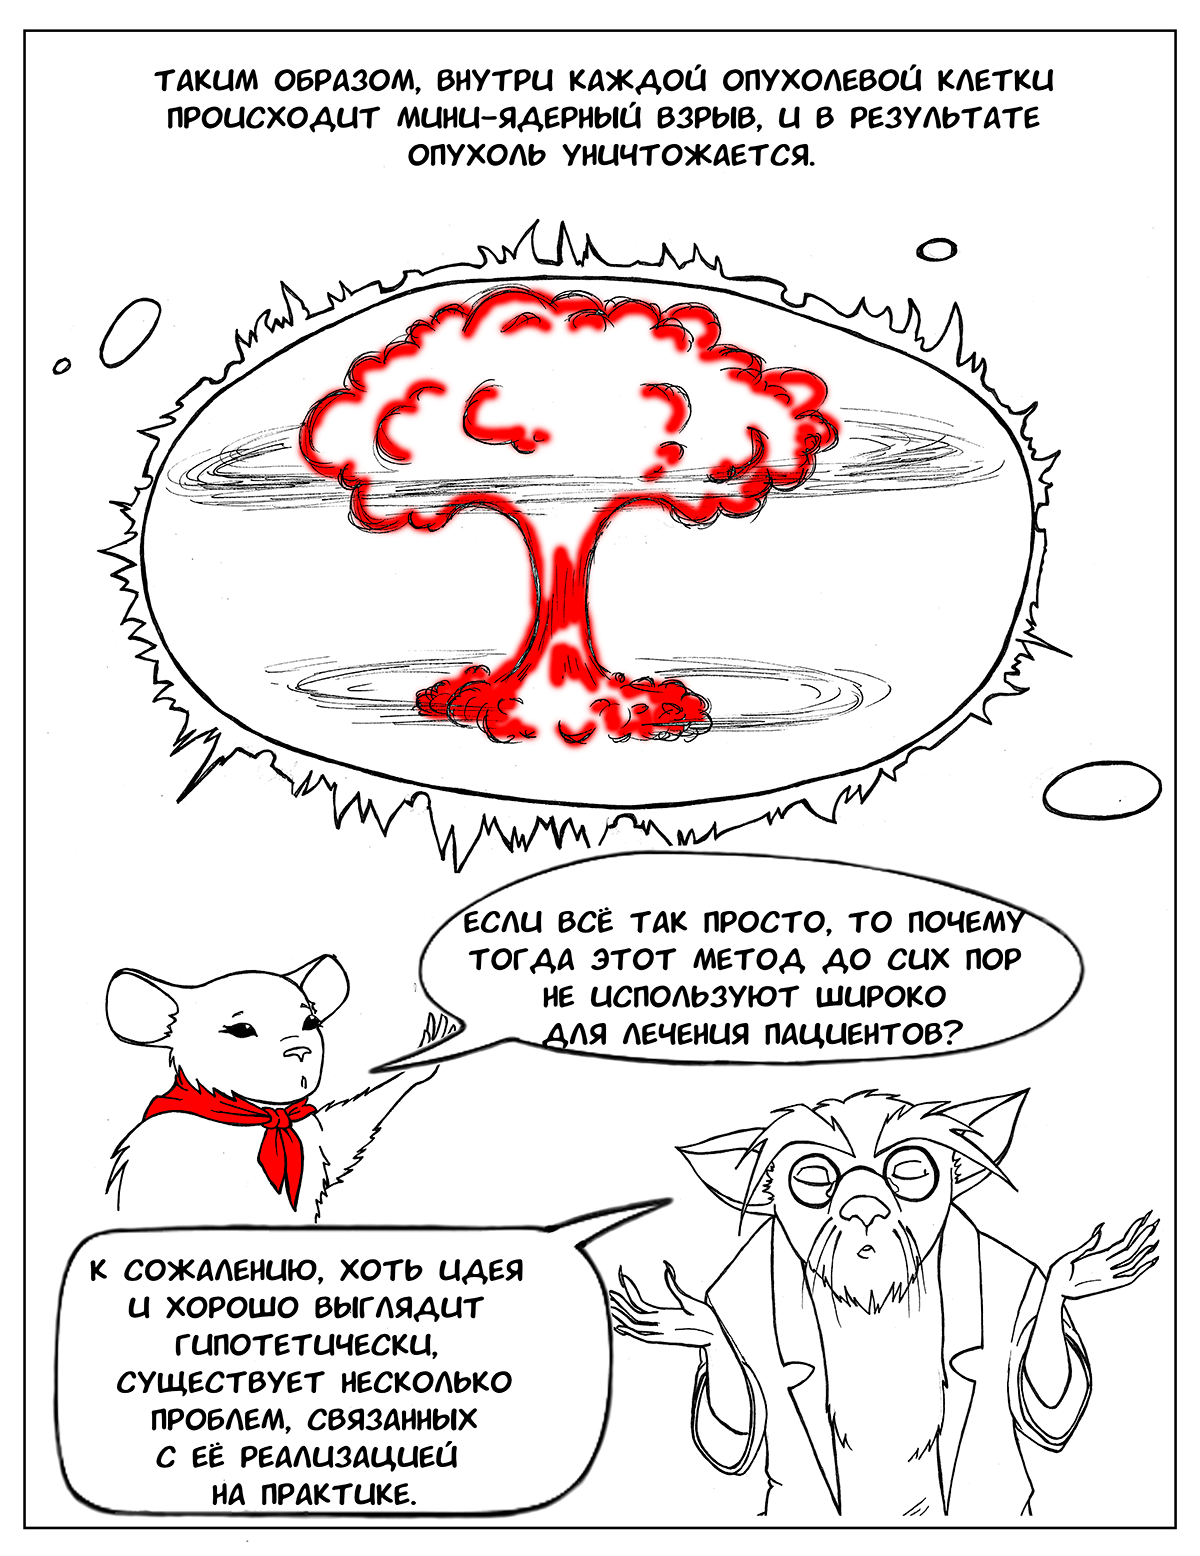 Ядерный взрыв в пределах клетки